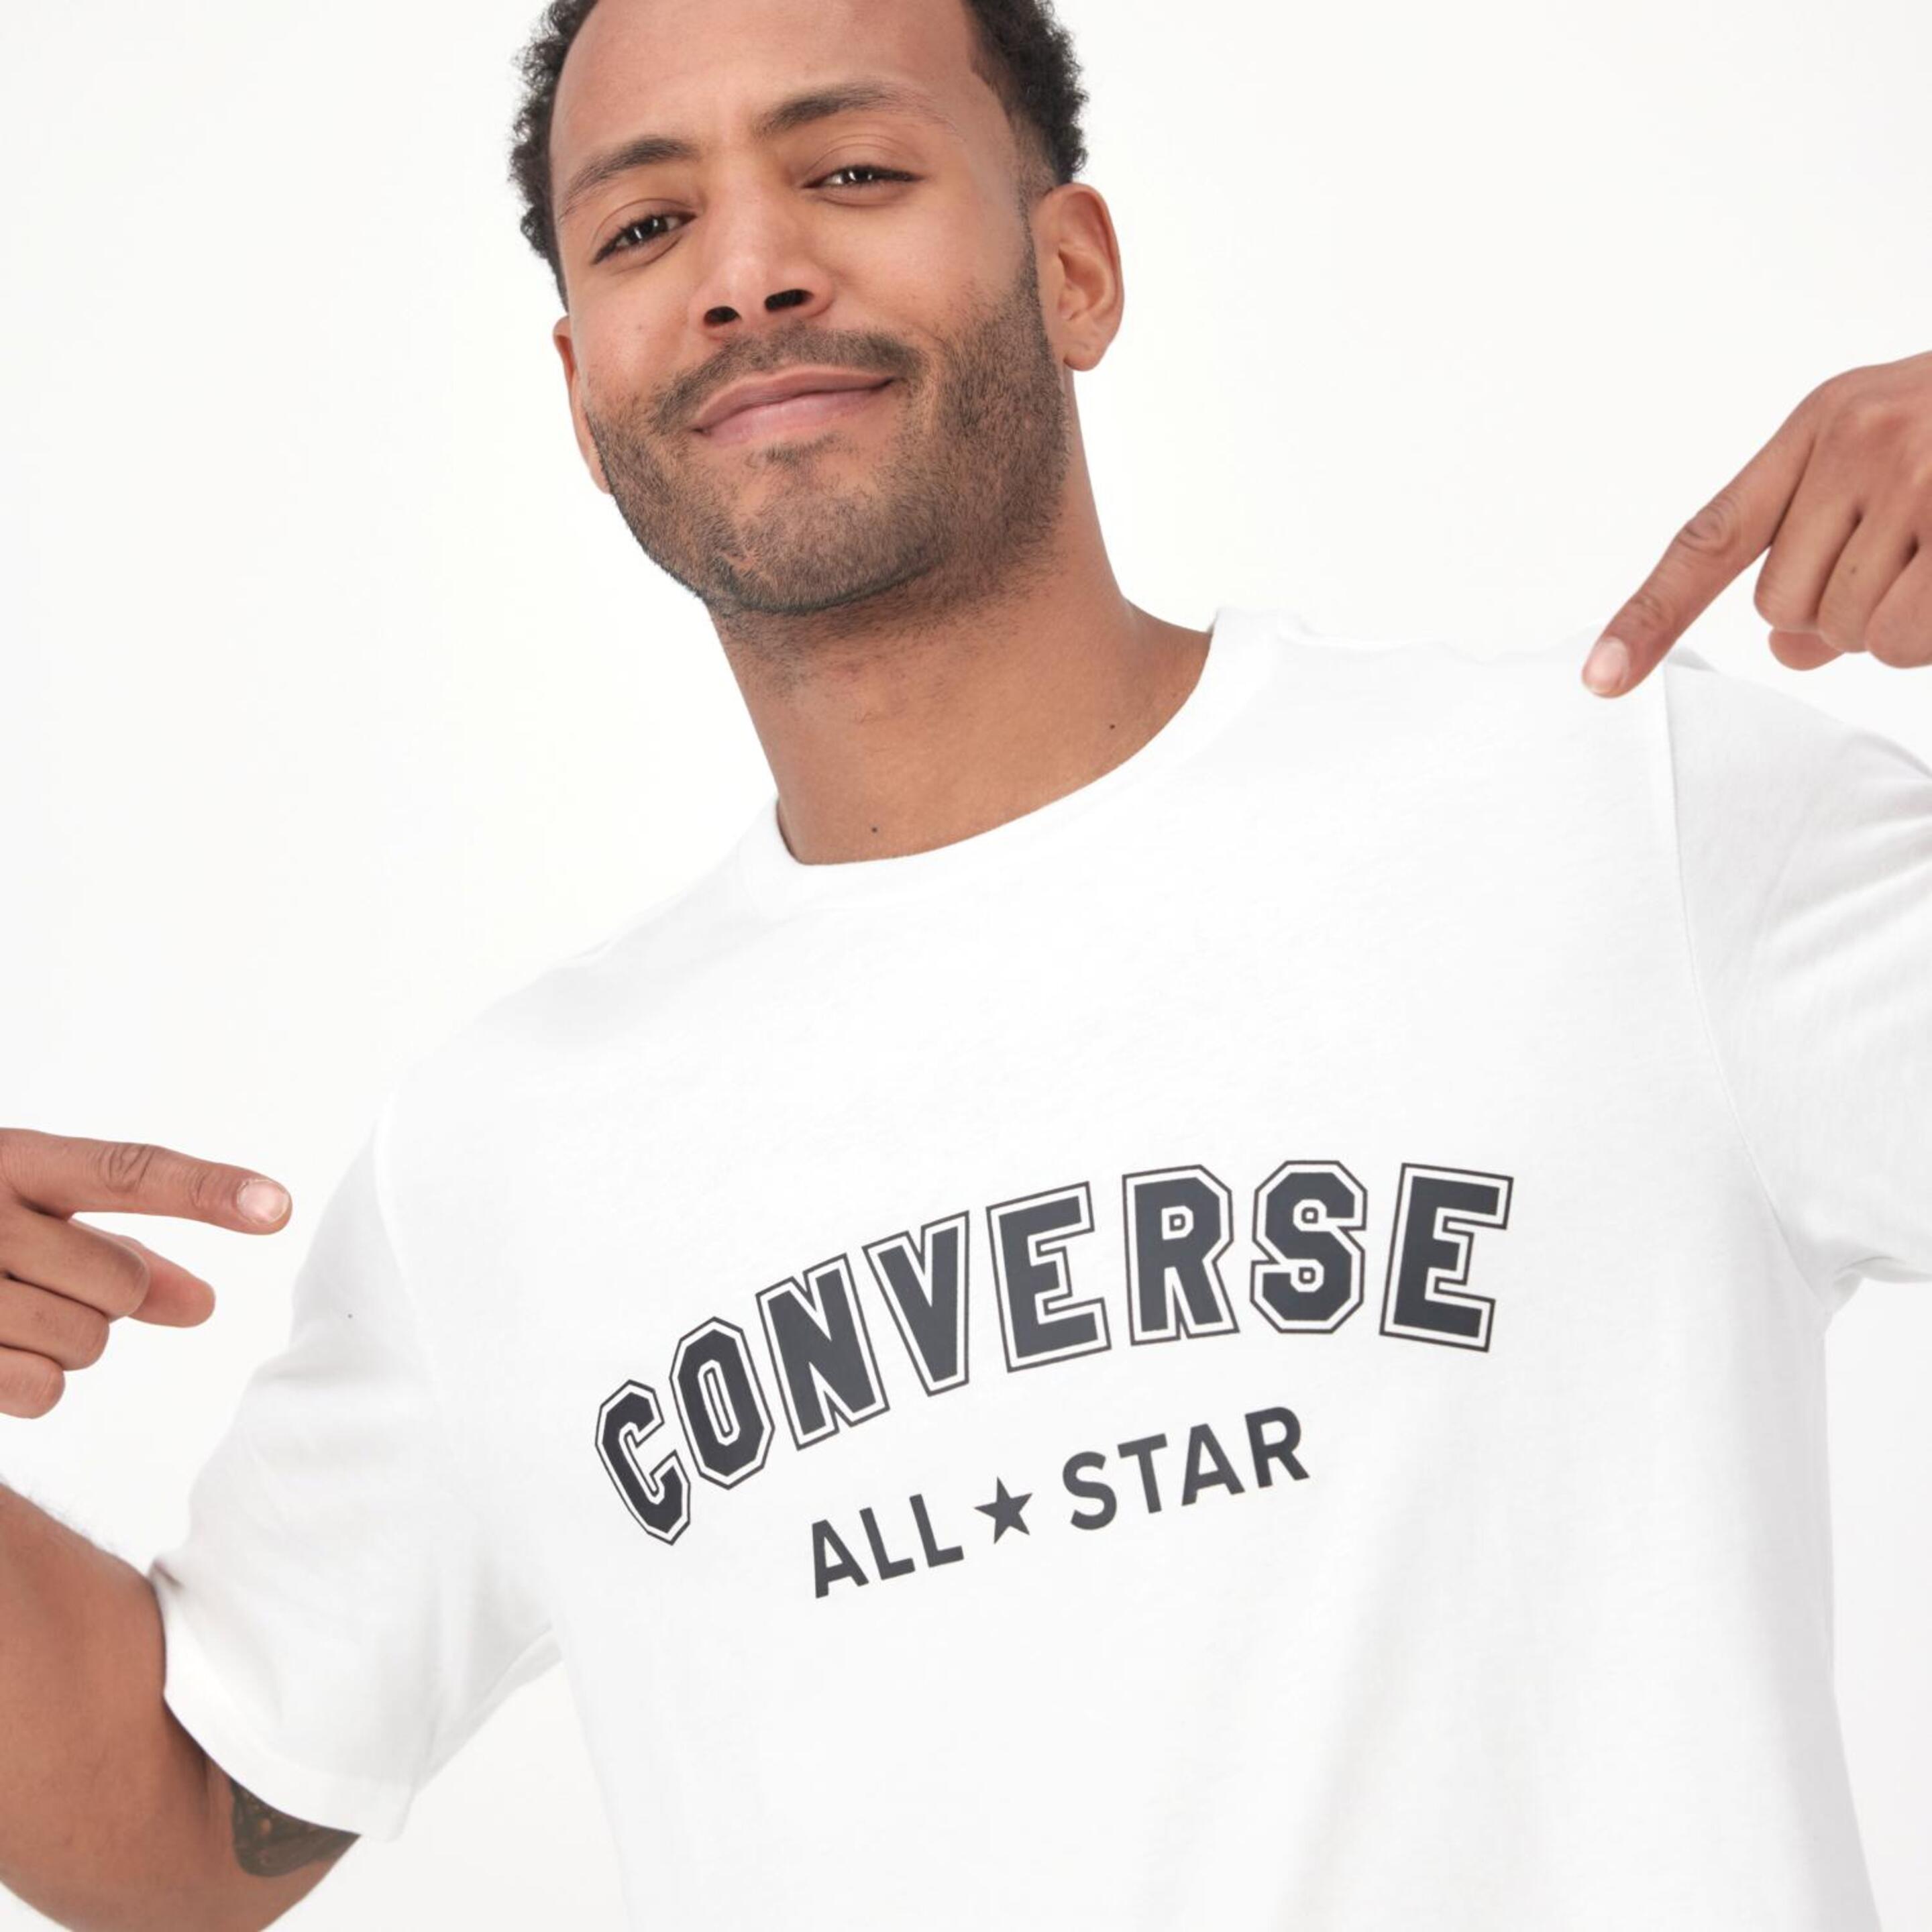 Converse All Star - Blanco - Camiseta Hombre  | Sprinter